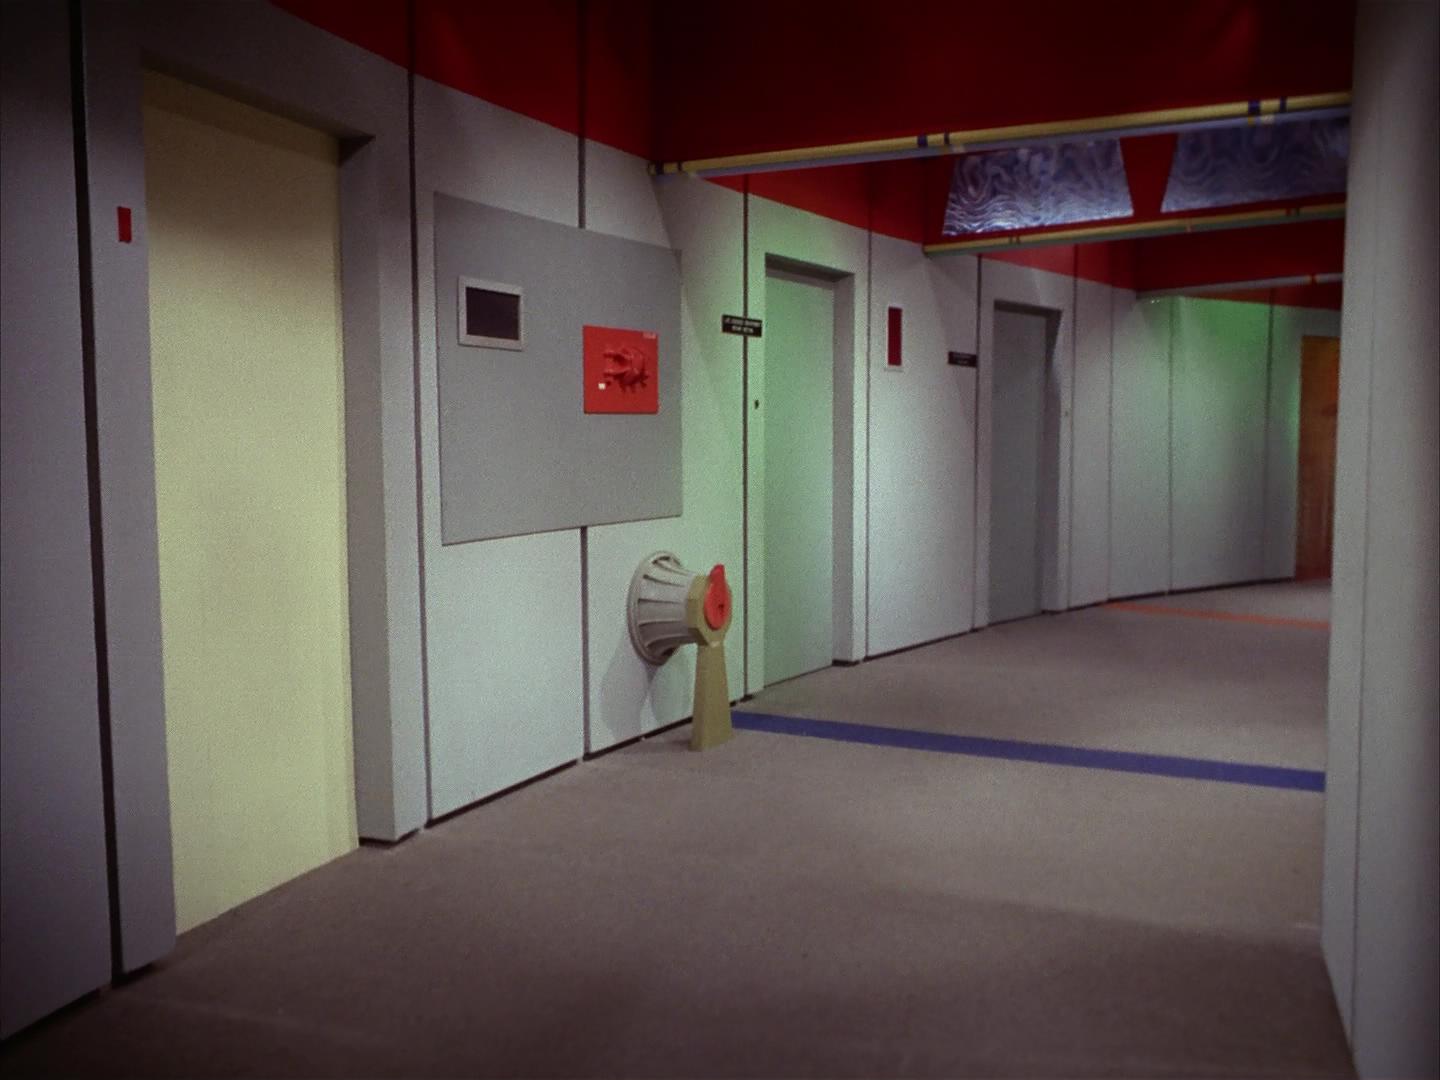 Star Trek TOS Corridor